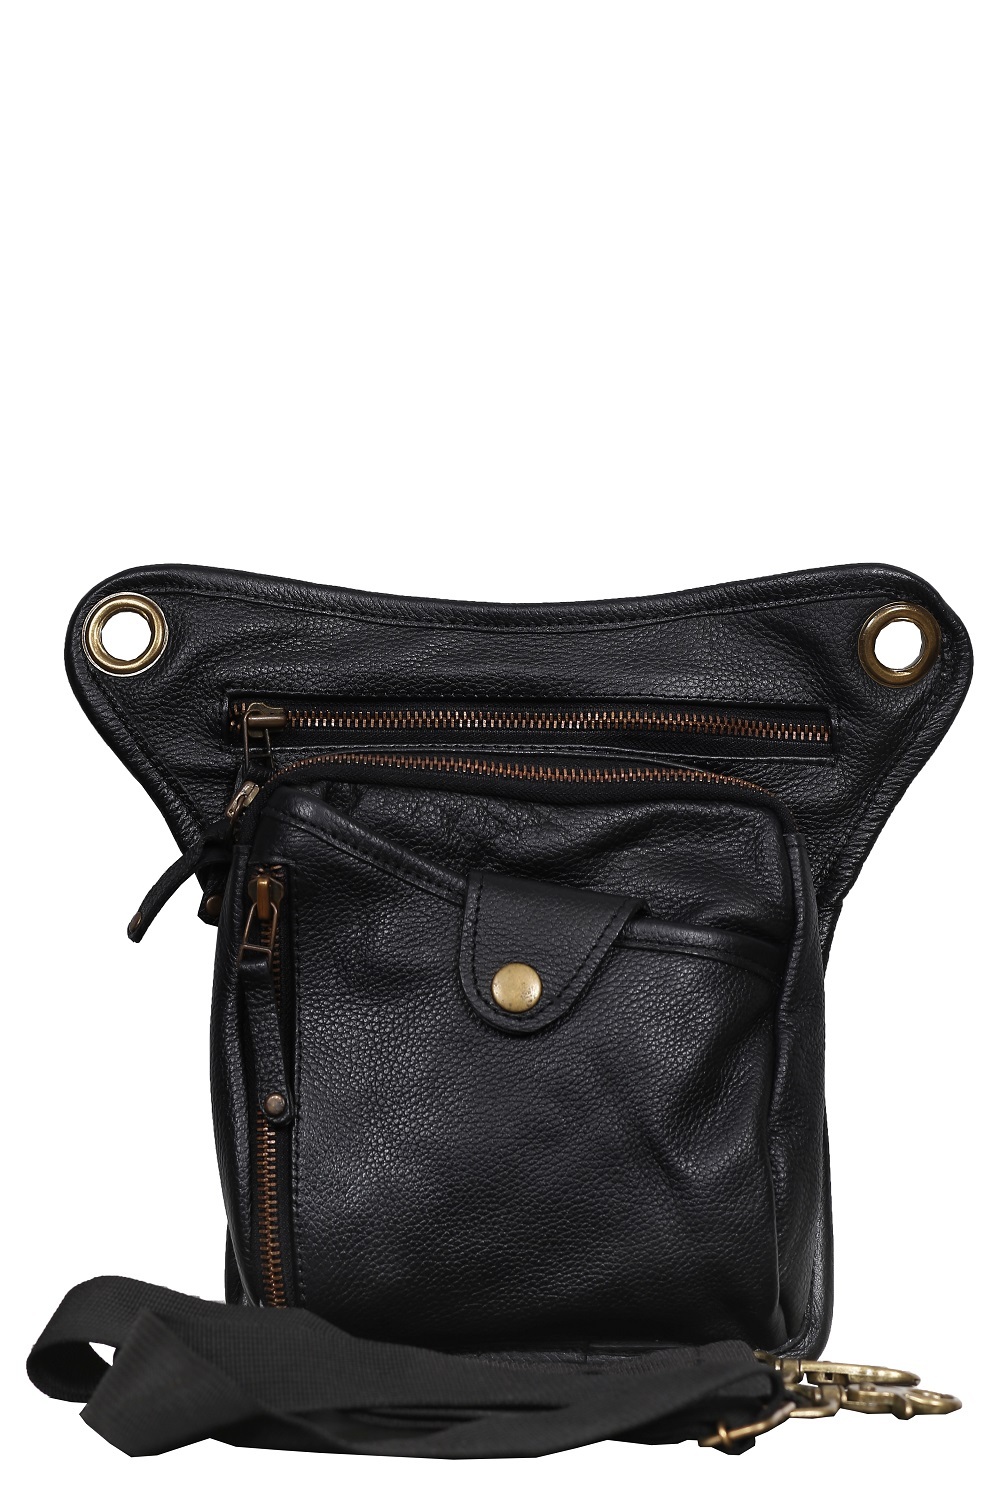 Holster Travel Hiking Bag, Black Leather Unisex Hip Bag, Fanny Pack Waist Bag,